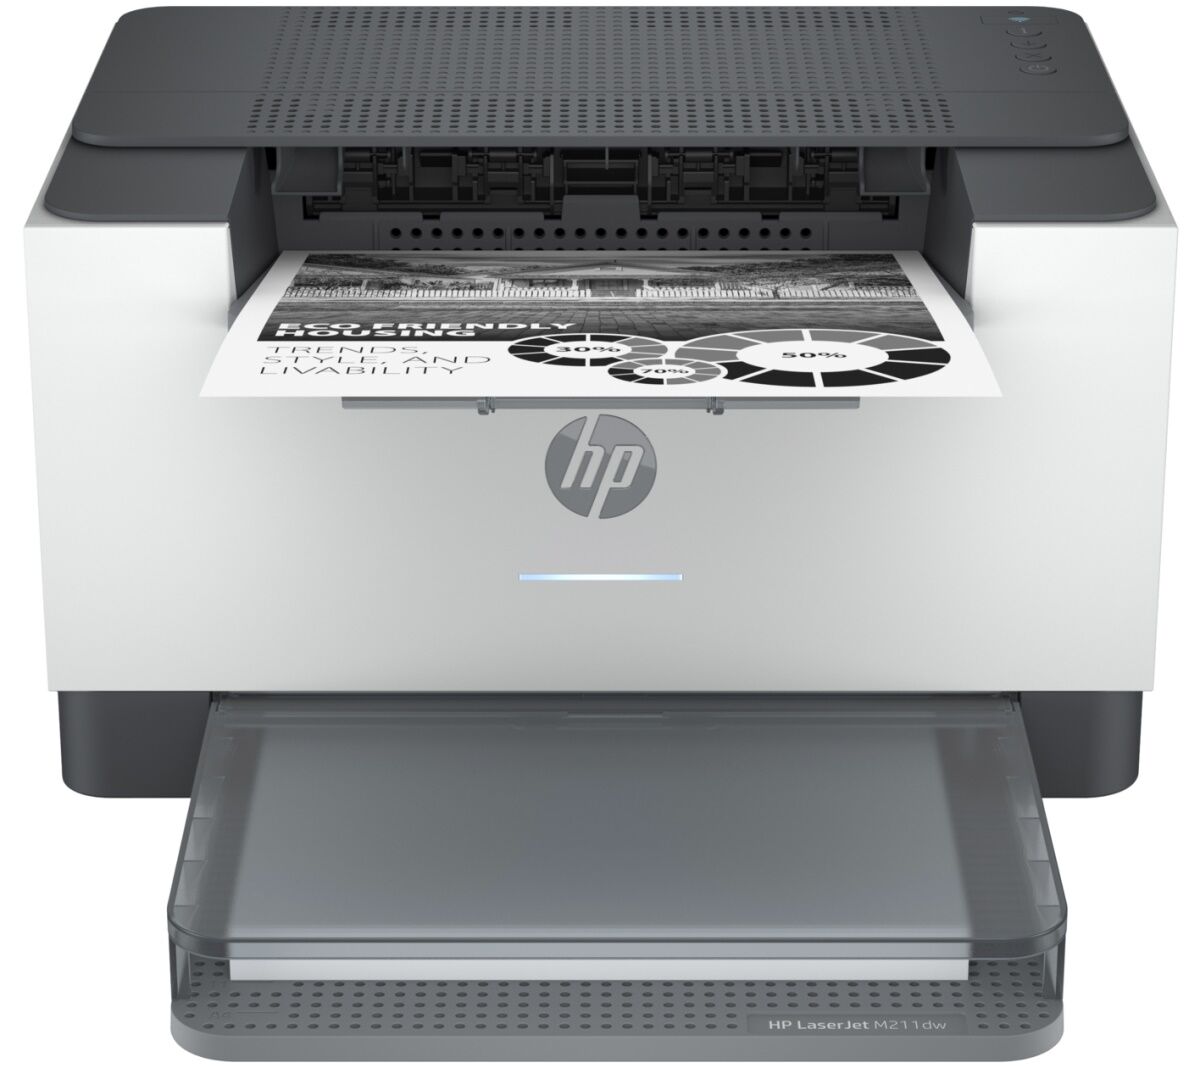 Принтер HP HP LaserJet M211dw 9YF83A/A4 черно-белый/печать Лазерный 600x600dpi 29стр.мин/Wi-Fi Bluetooth Сетевой интерфе